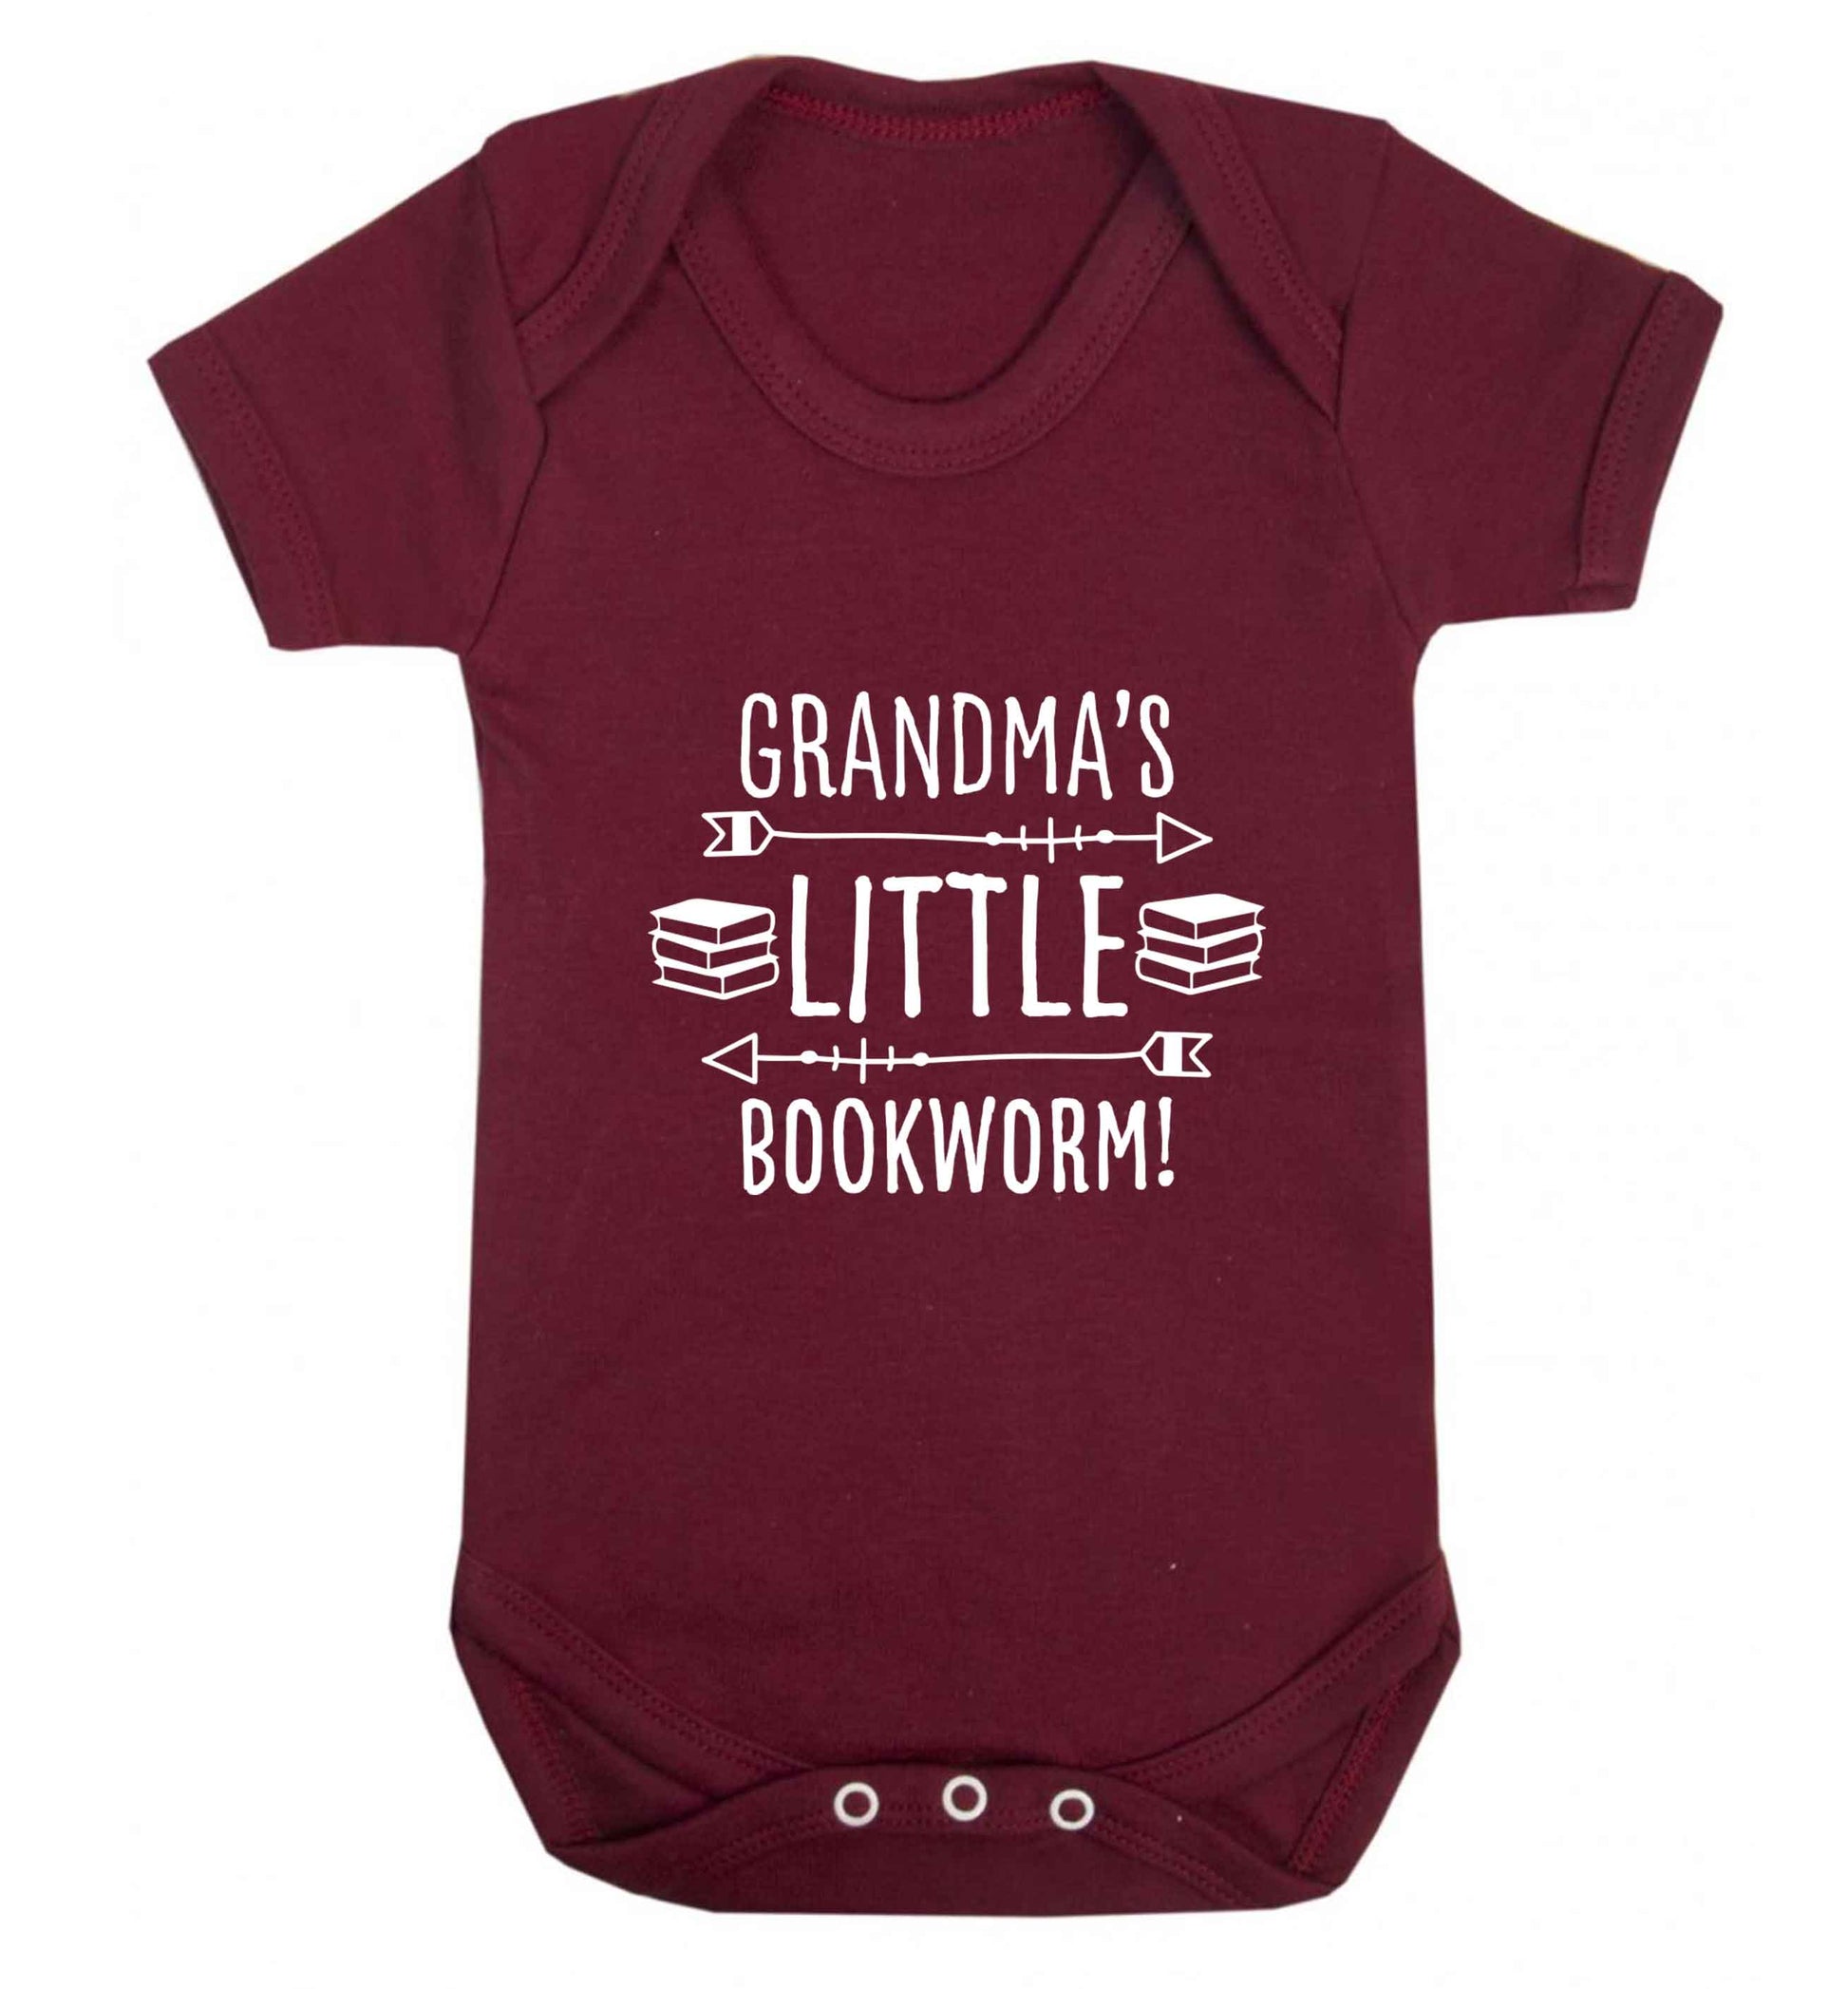 Grandma's little bookworm baby vest maroon 18-24 months